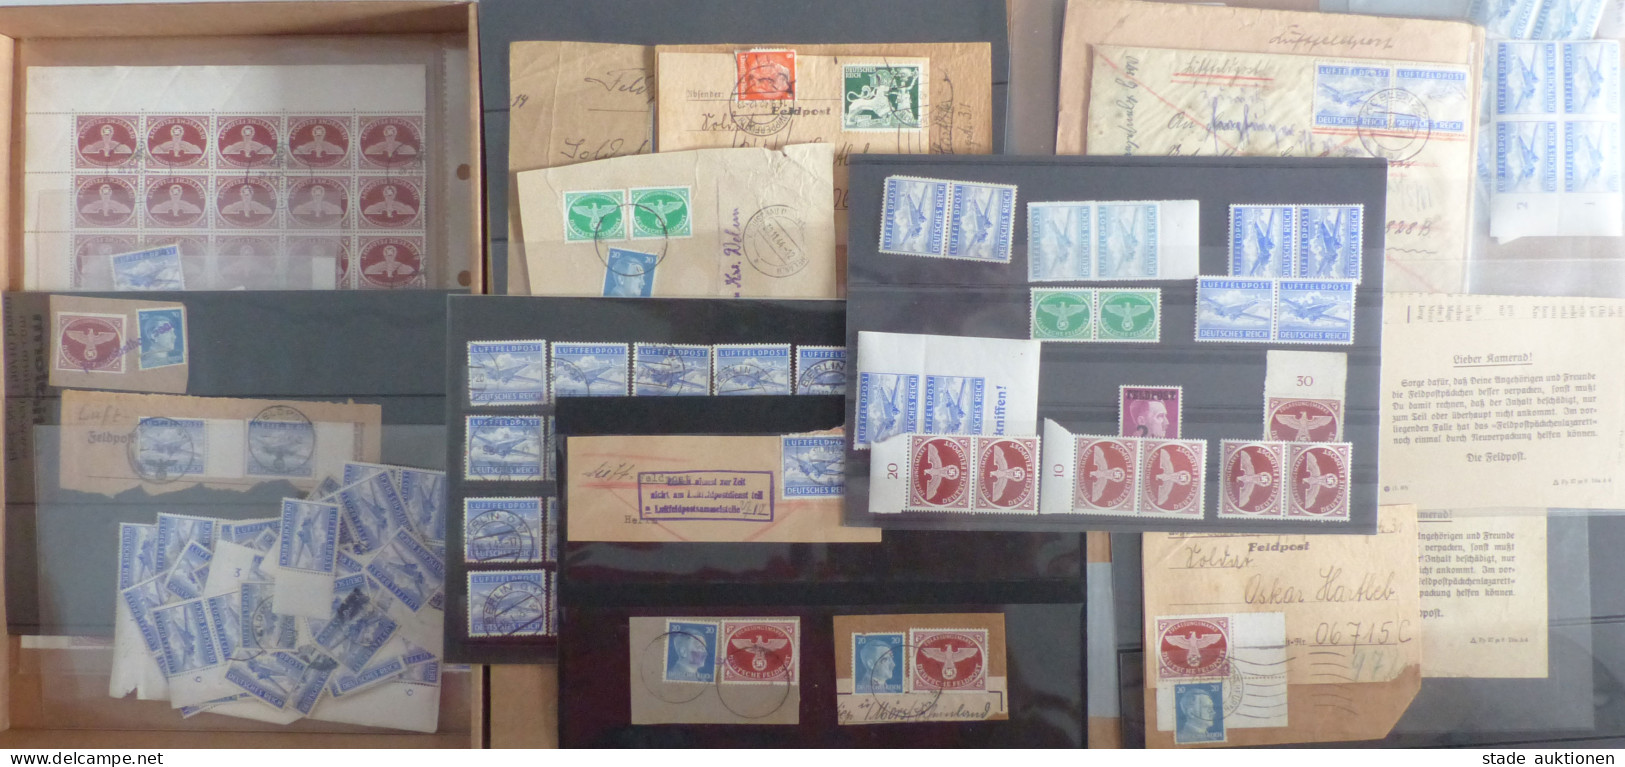 Feldpost WK II Sammlung Briefmarken, Luftfeldpost, Mehrfach Briefstücke Mit Päckchenmarken, Ein Paar Belege, Unterschied - Weltkrieg 1939-45